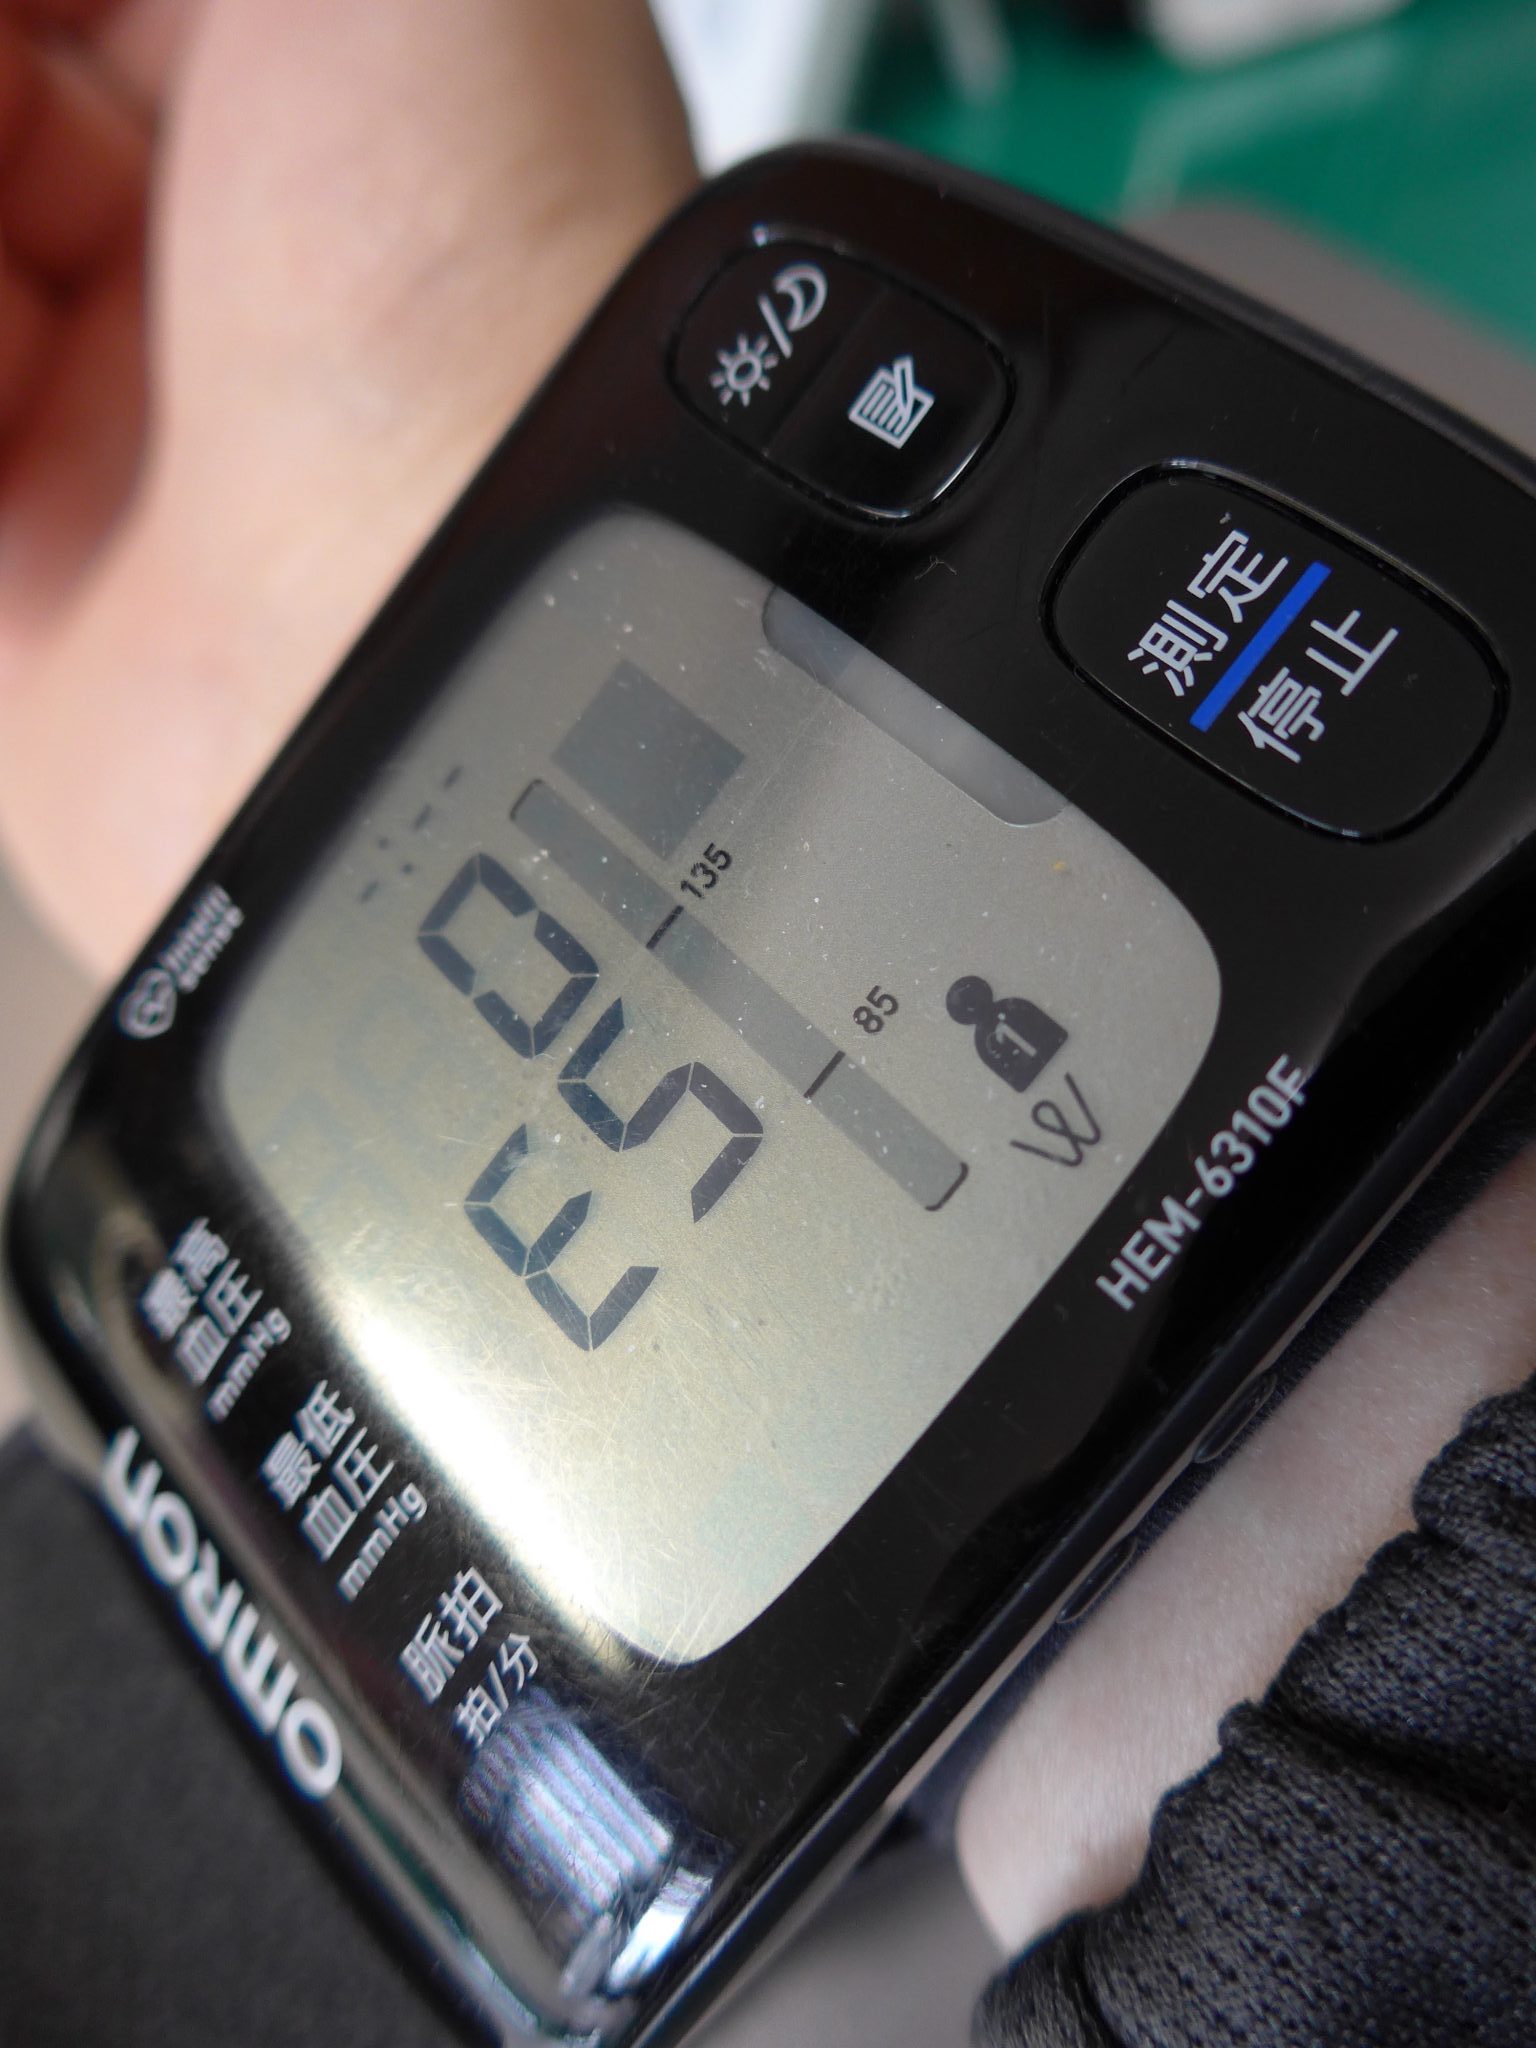 寿命 血圧 計 【血圧計】 測定値が低く出たり、高く出るなどバラツキがありますが、その原因は何が考えられますか